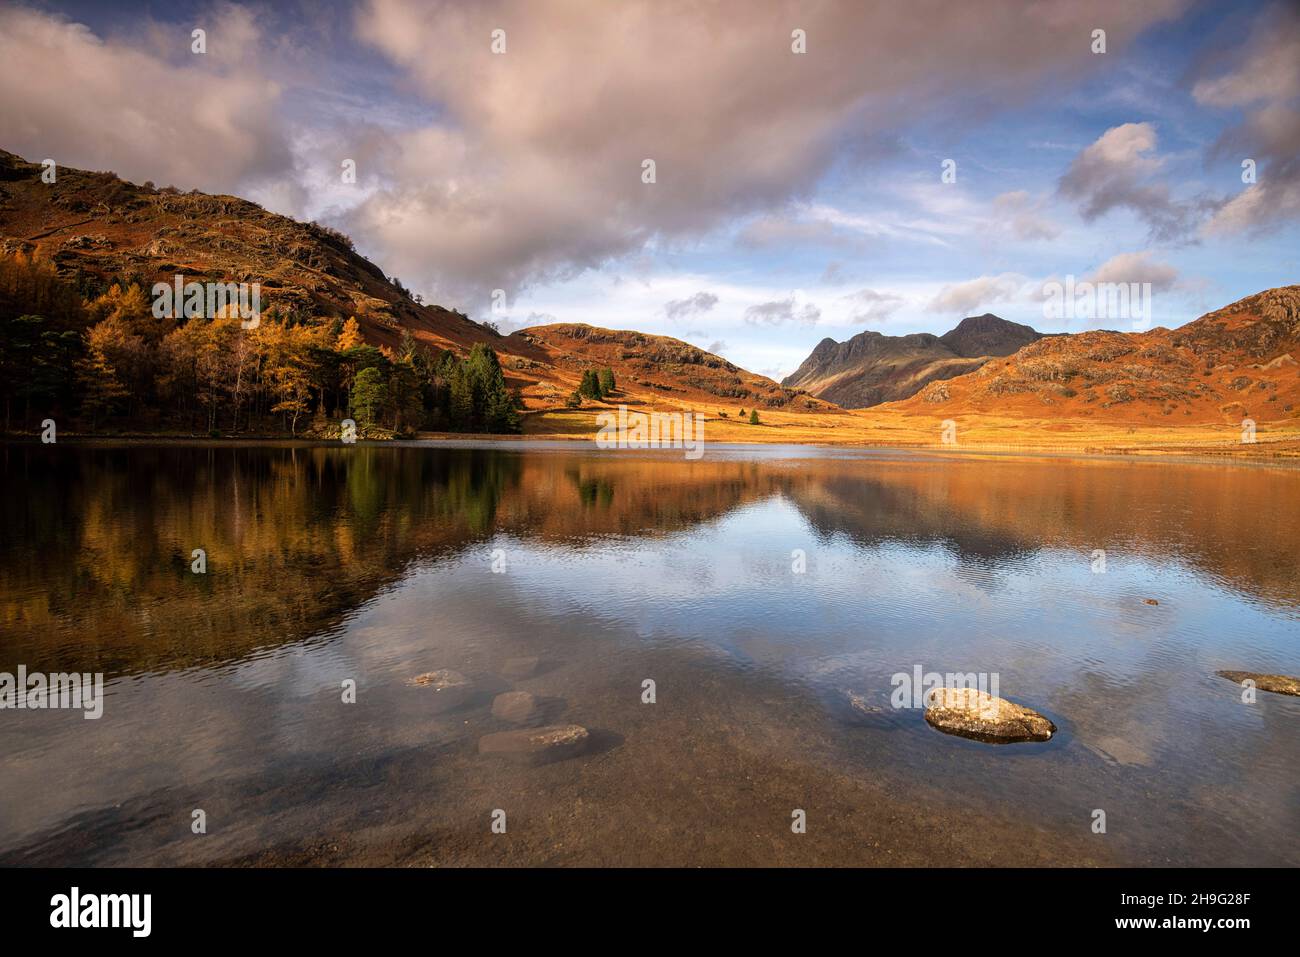 Réflexions d'automne à Blea Tarn dans le Lake District, Cumbria Angleterre Royaume-Uni Banque D'Images